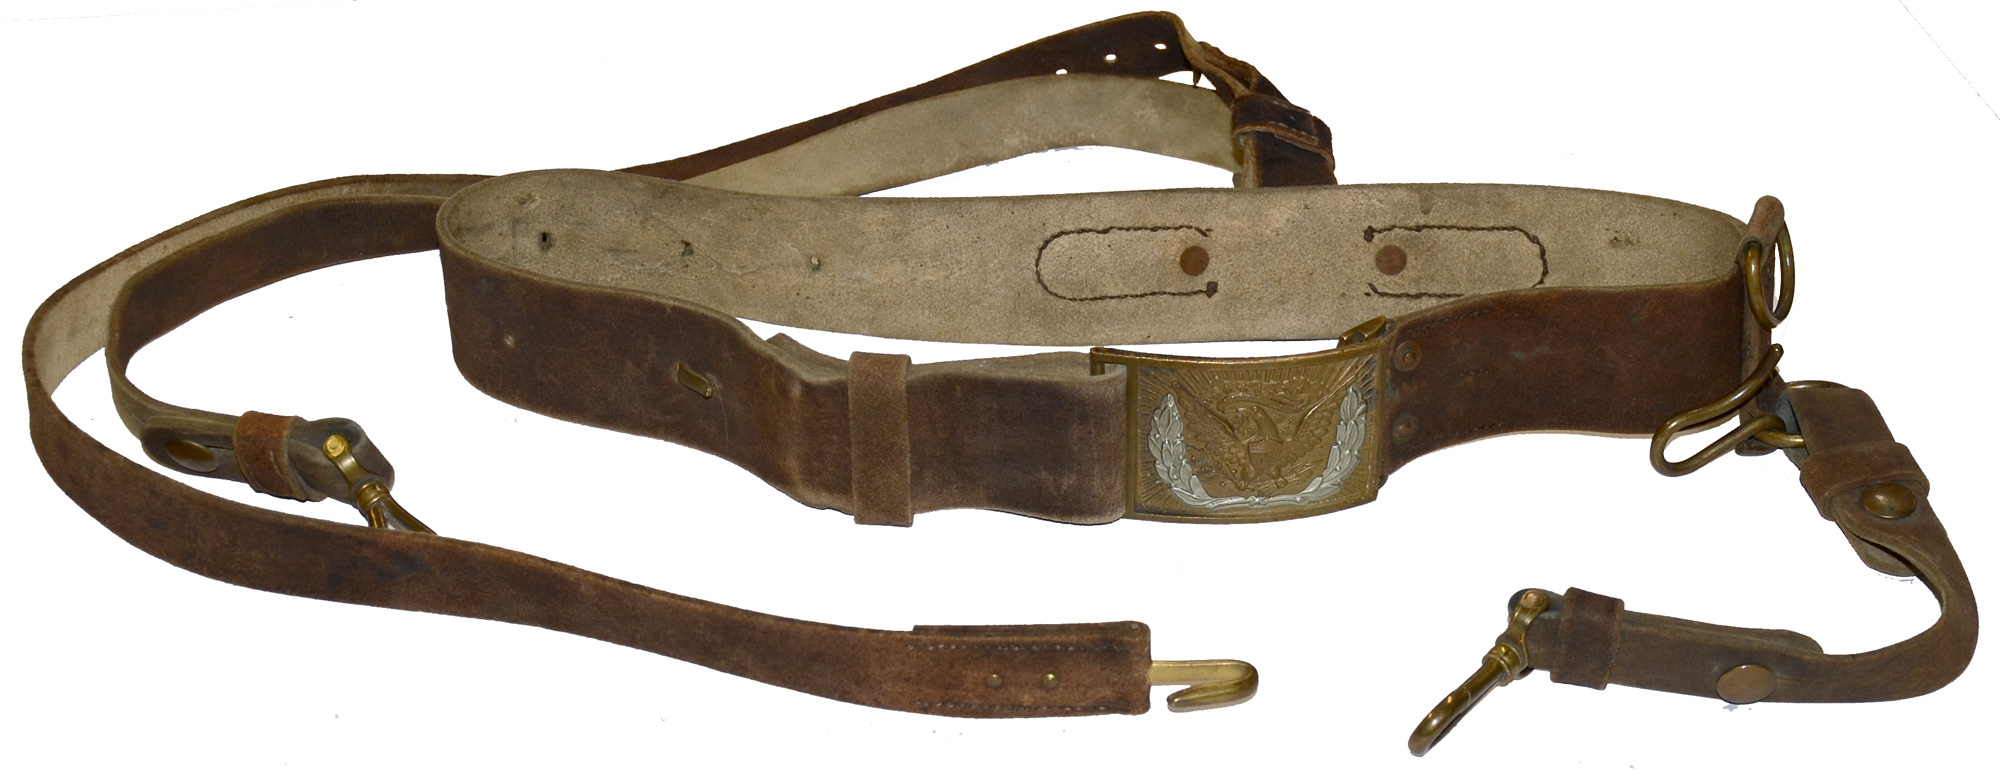 Sca Leather Armor - Union Sword Belt and Buckle - Civil War Era